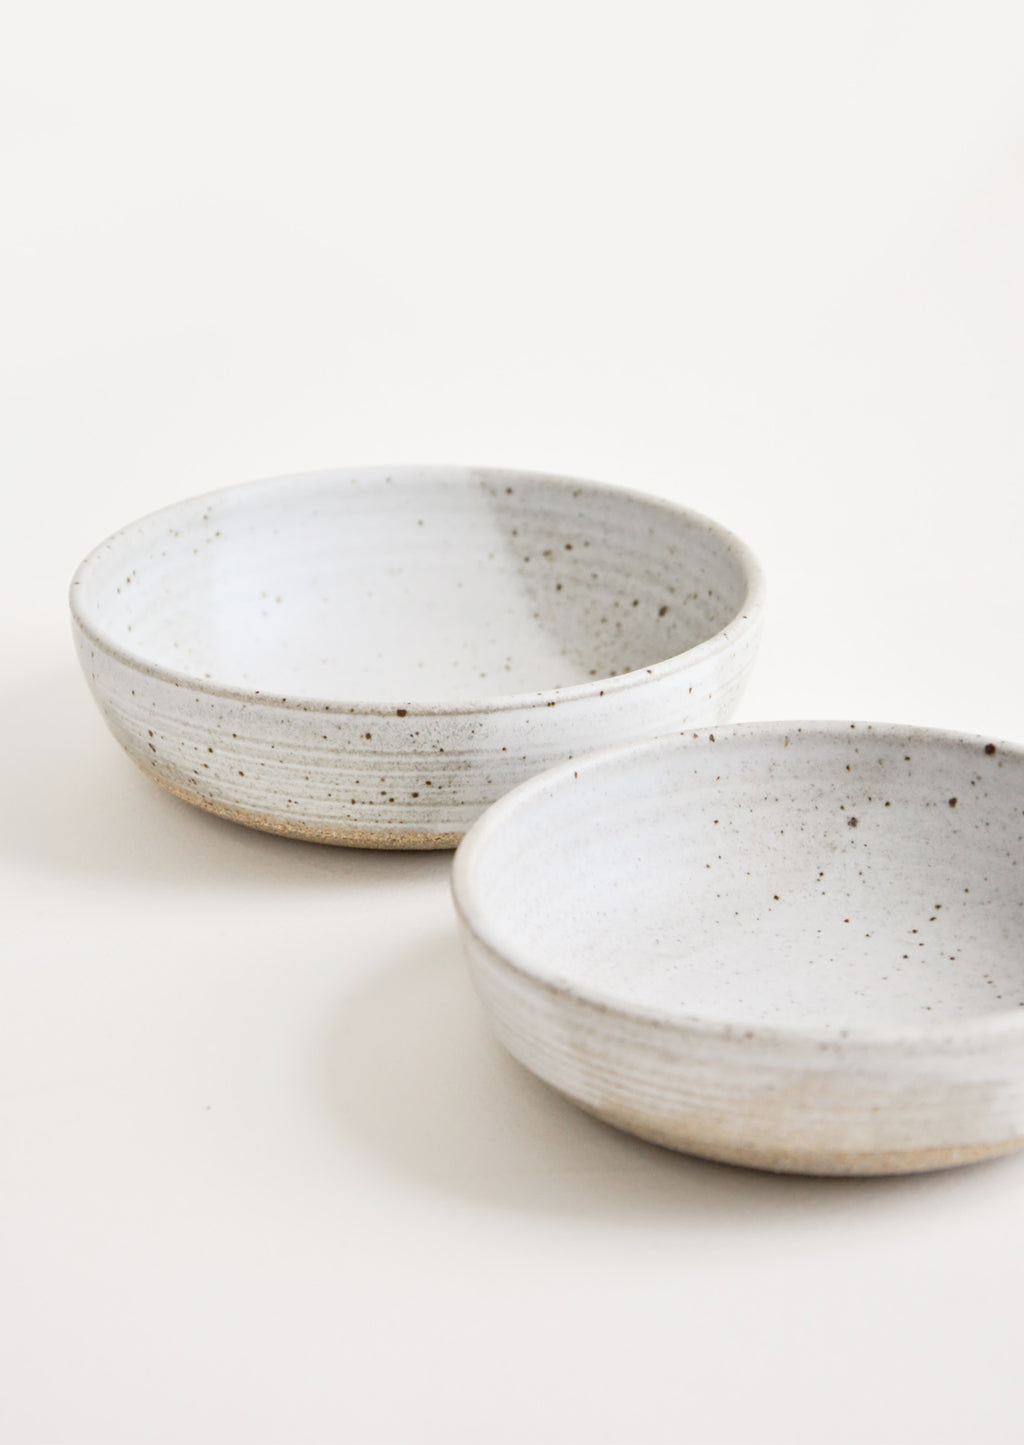 Matte Grey: Rustic Ceramic Yogurt Bowl in Matte Grey - LEIF